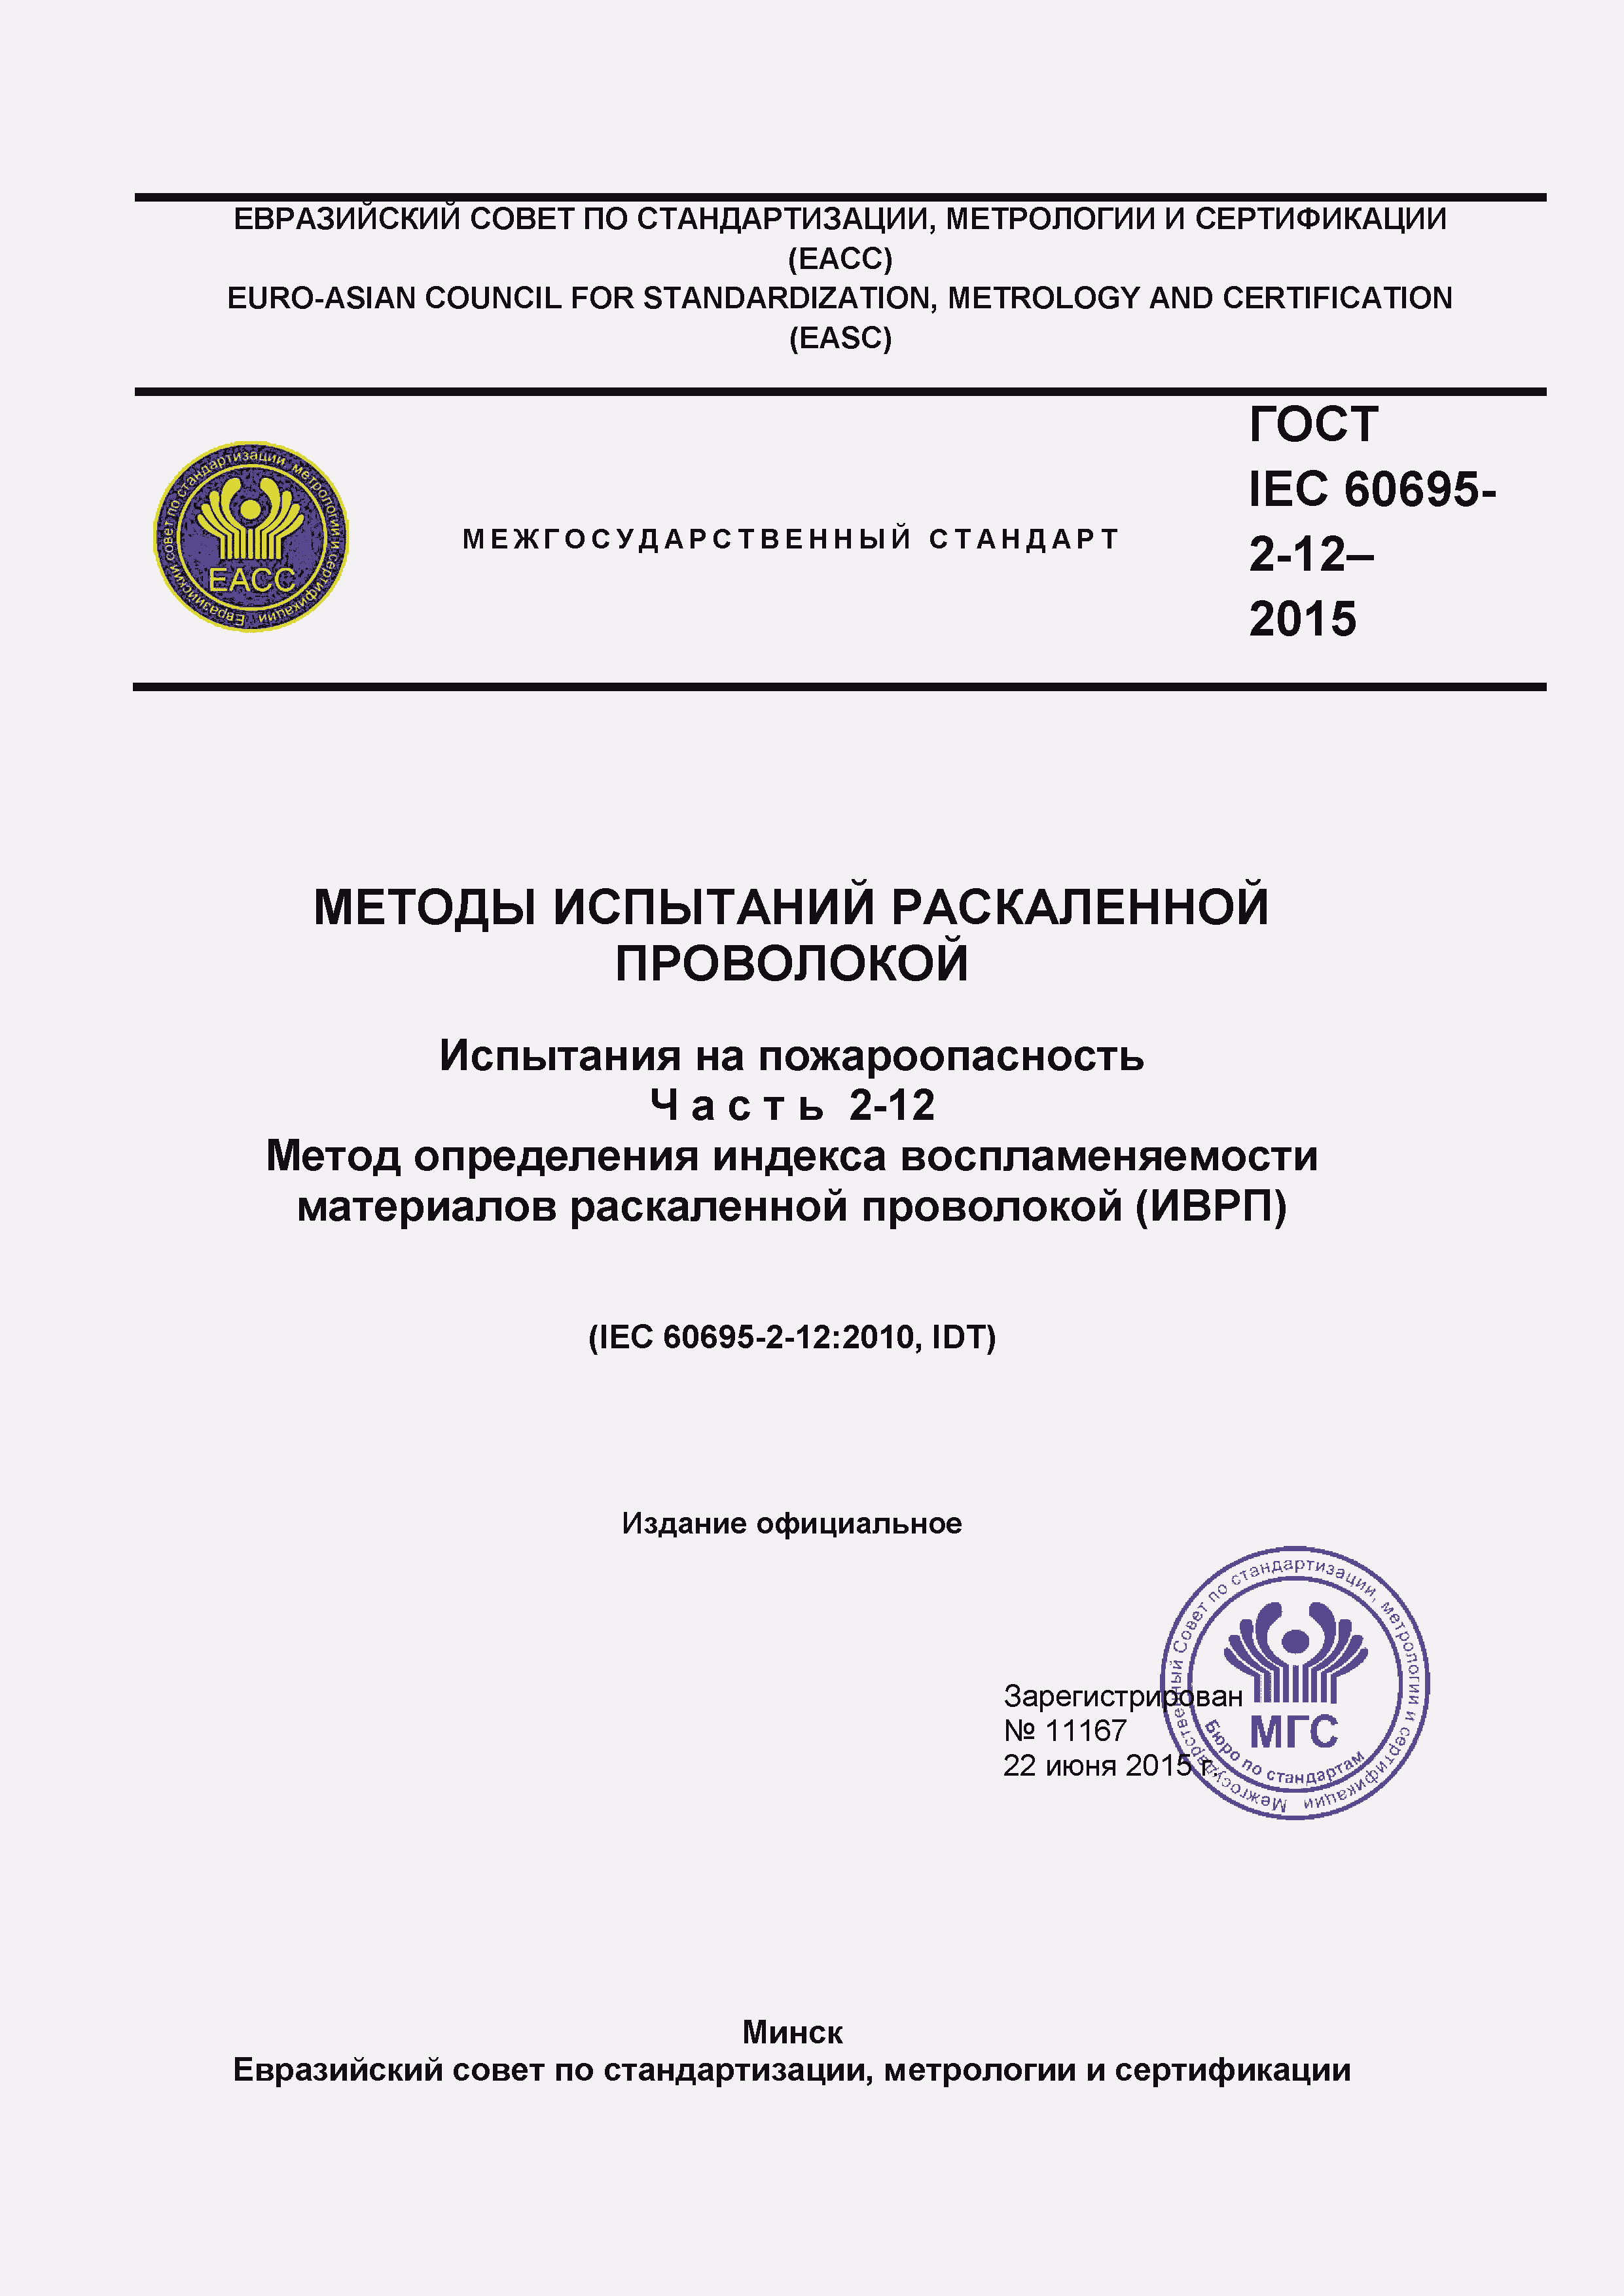  IEC 60695-2-12-2015.  1